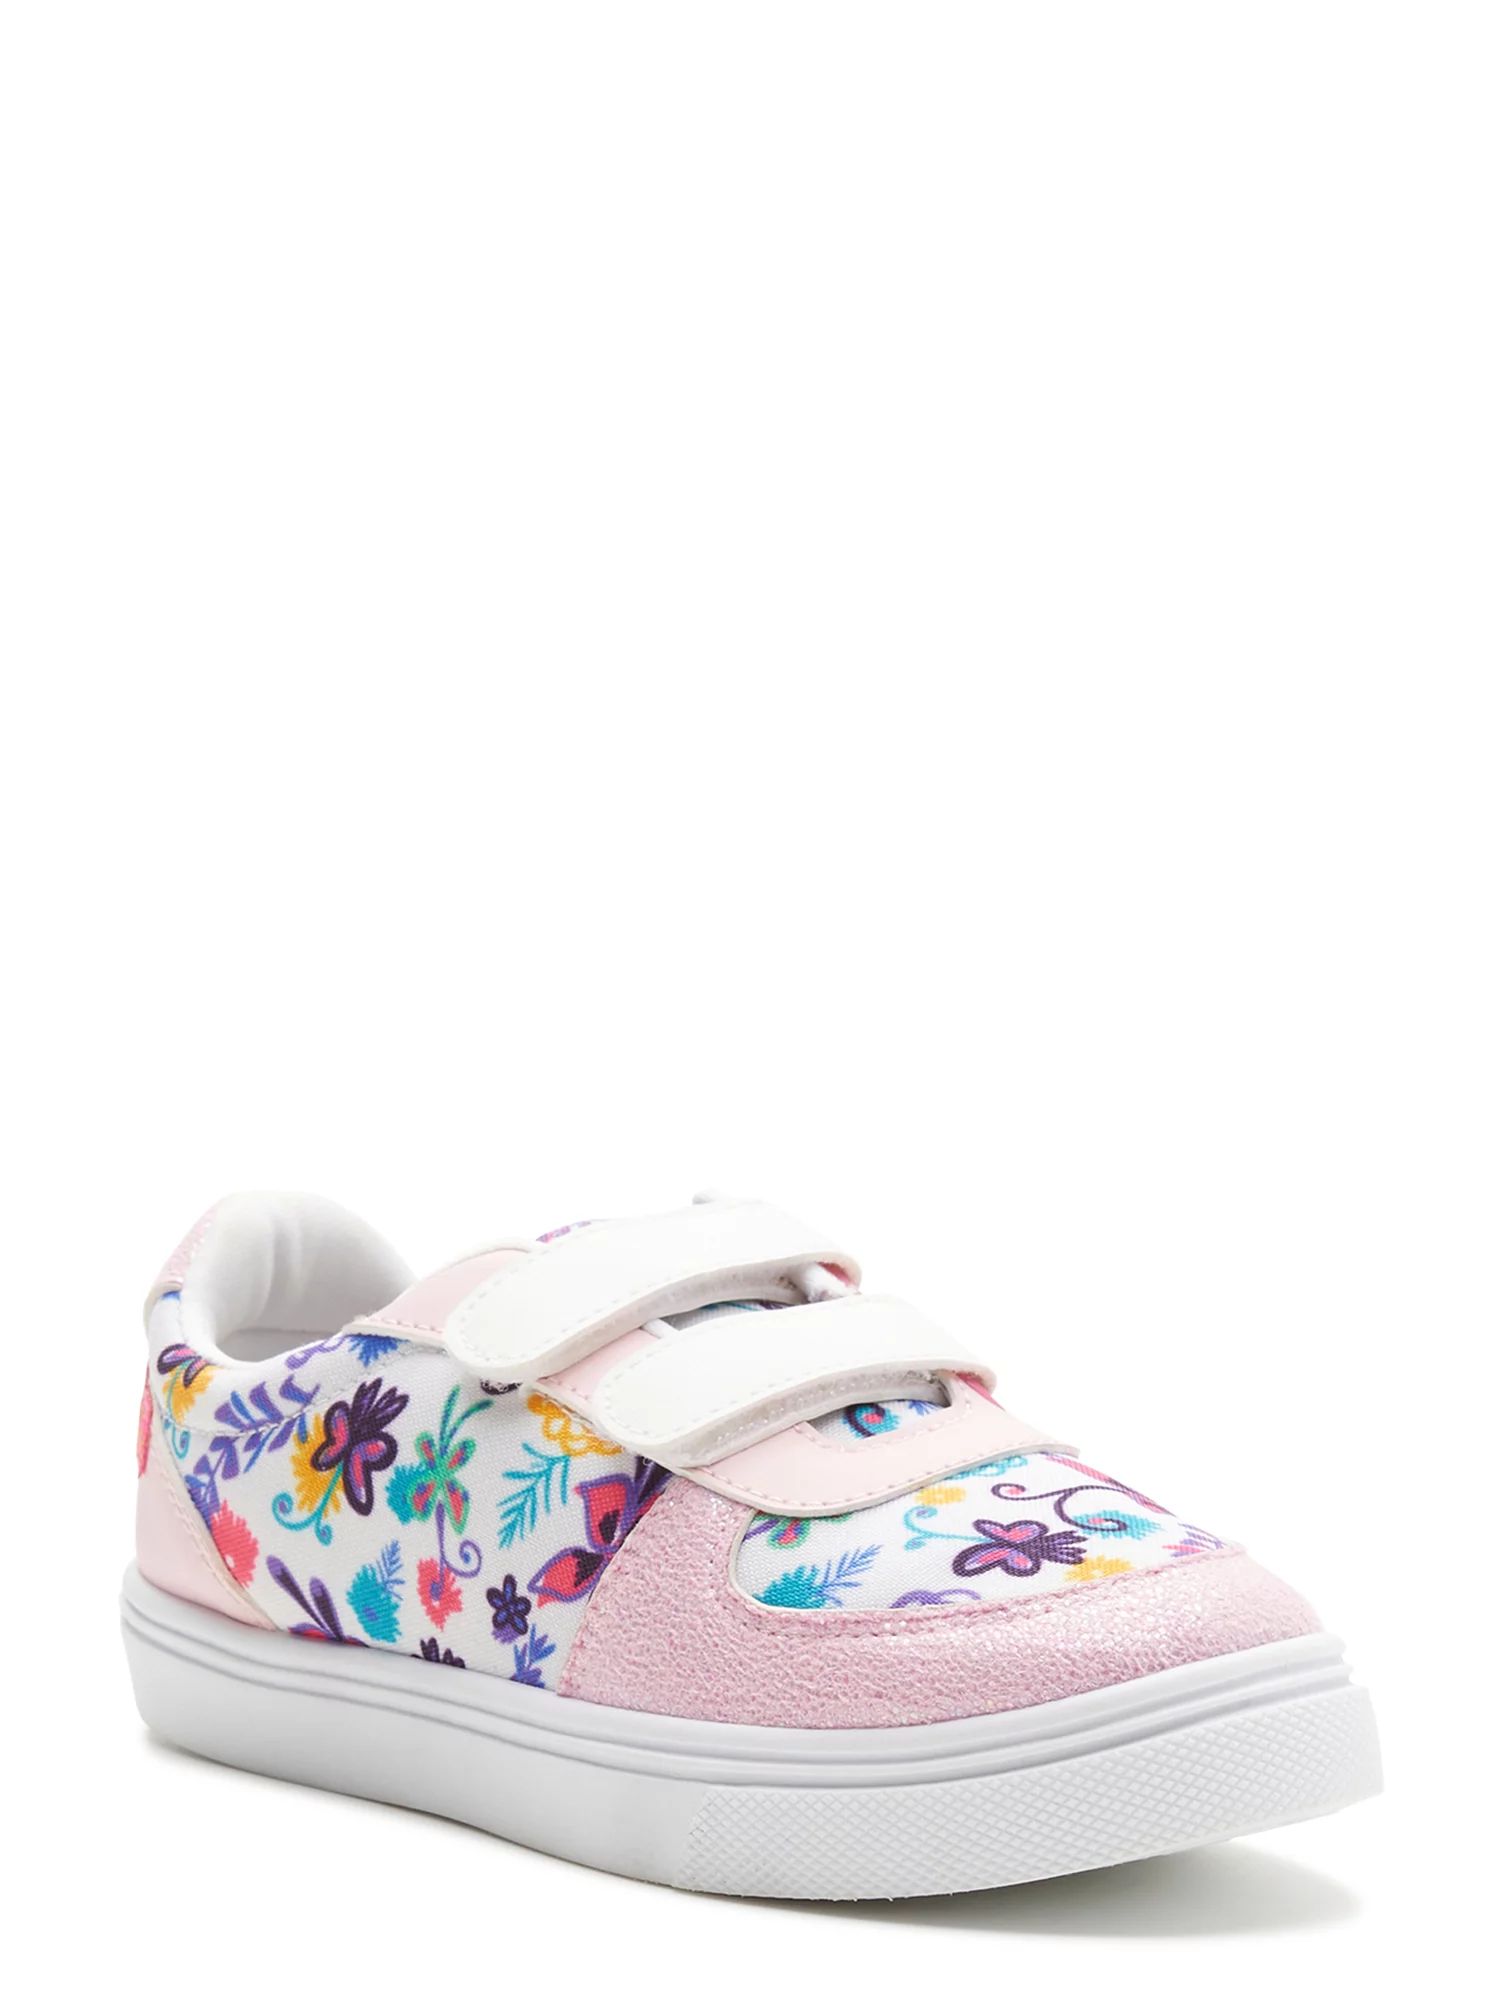 Encanto Toddler Girls Sneakers, Sizes 11-5 | Walmart (US)